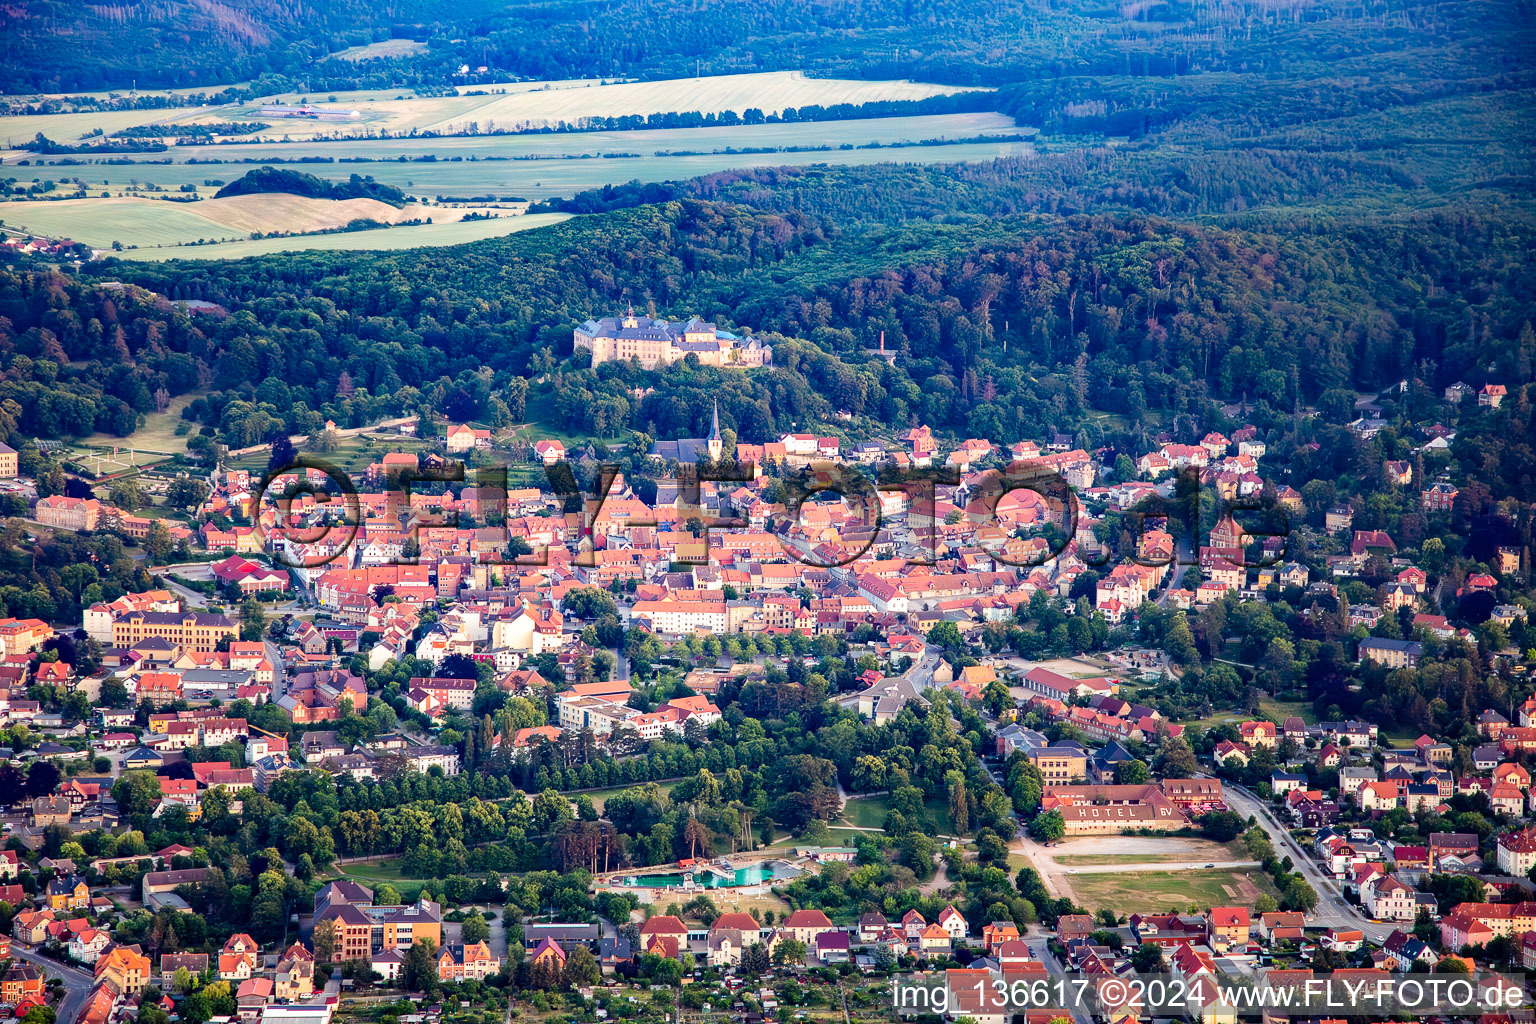 Vue aérienne de Vieille ville autour de l'hôtel-château Blankenburg à Blankenburg dans le département Saxe-Anhalt, Allemagne